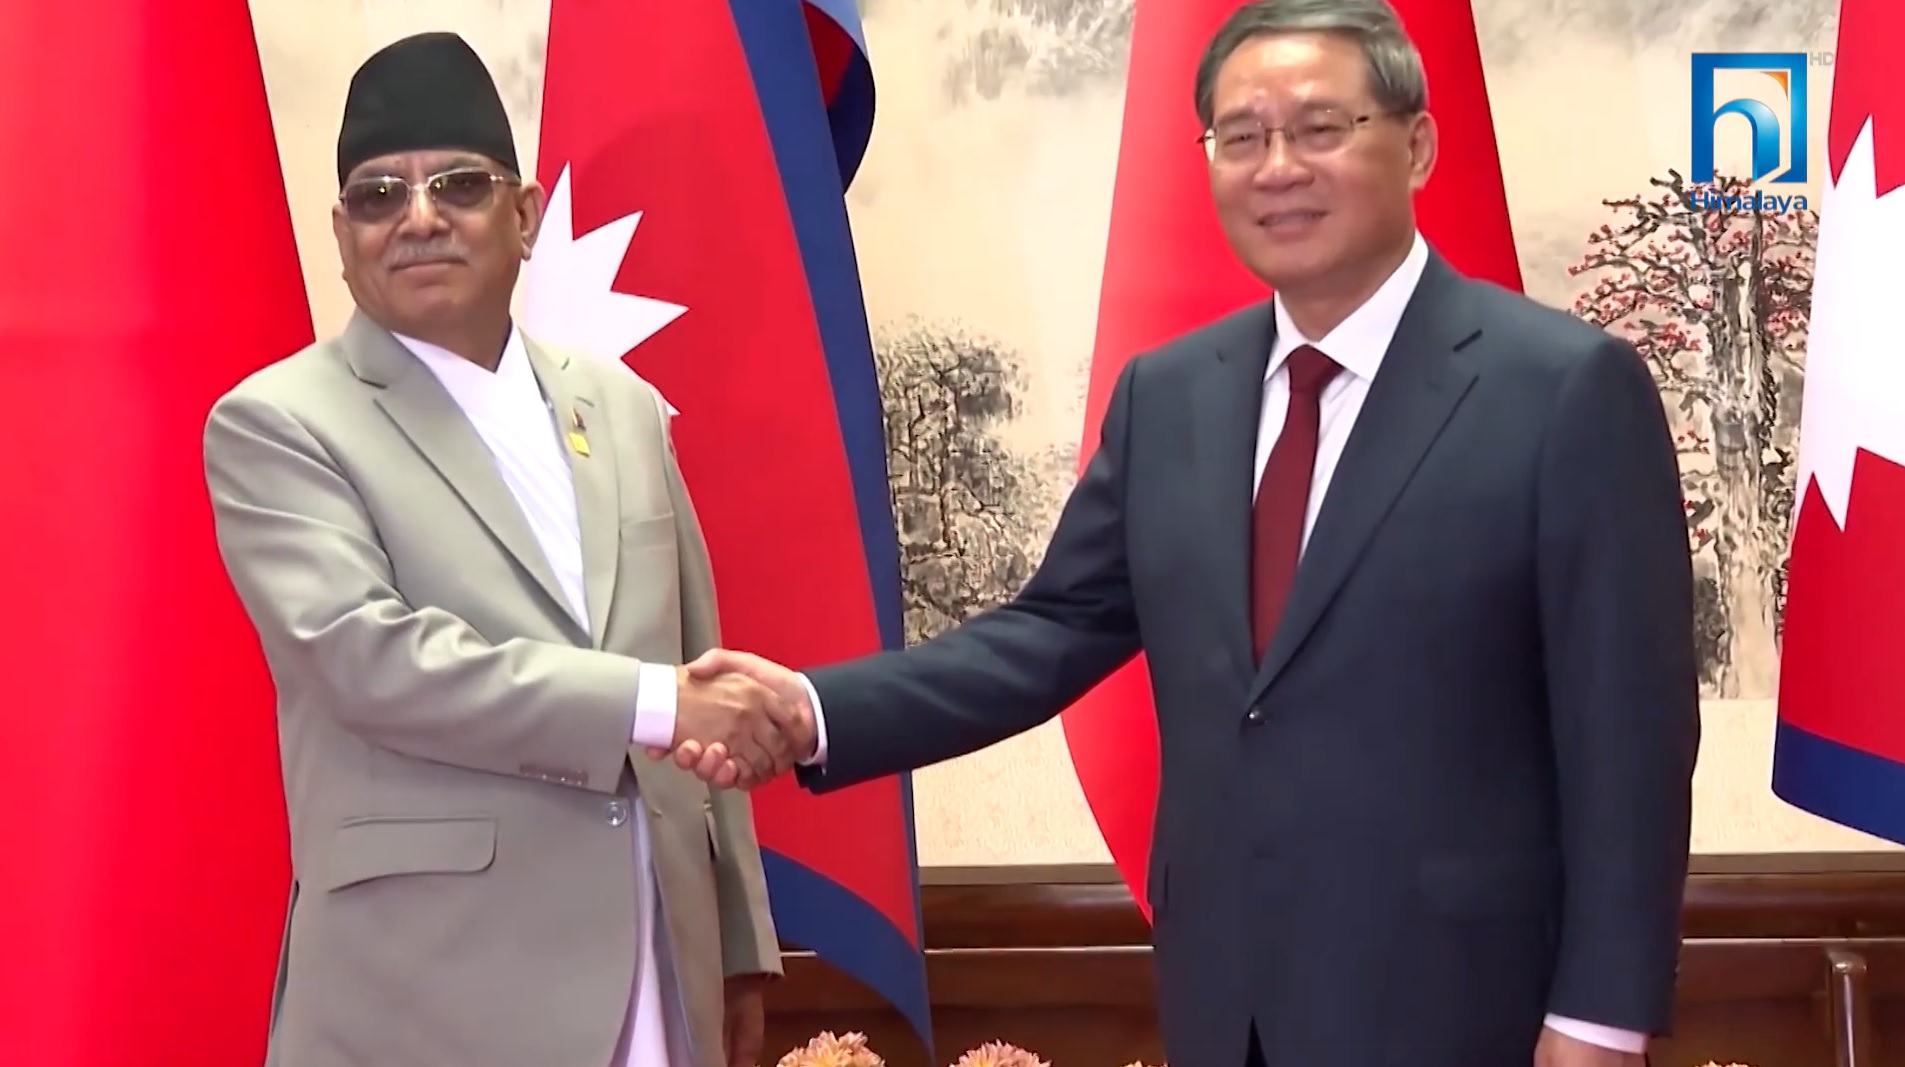 बेइजिङमा नेपाल–चीन प्रधानमन्त्रीस्तरीय वार्ता, १२ बुँदे सम्झौता, पुराना सम्झौताको उपेक्षा (भिडियो रिपोर्टसहित)